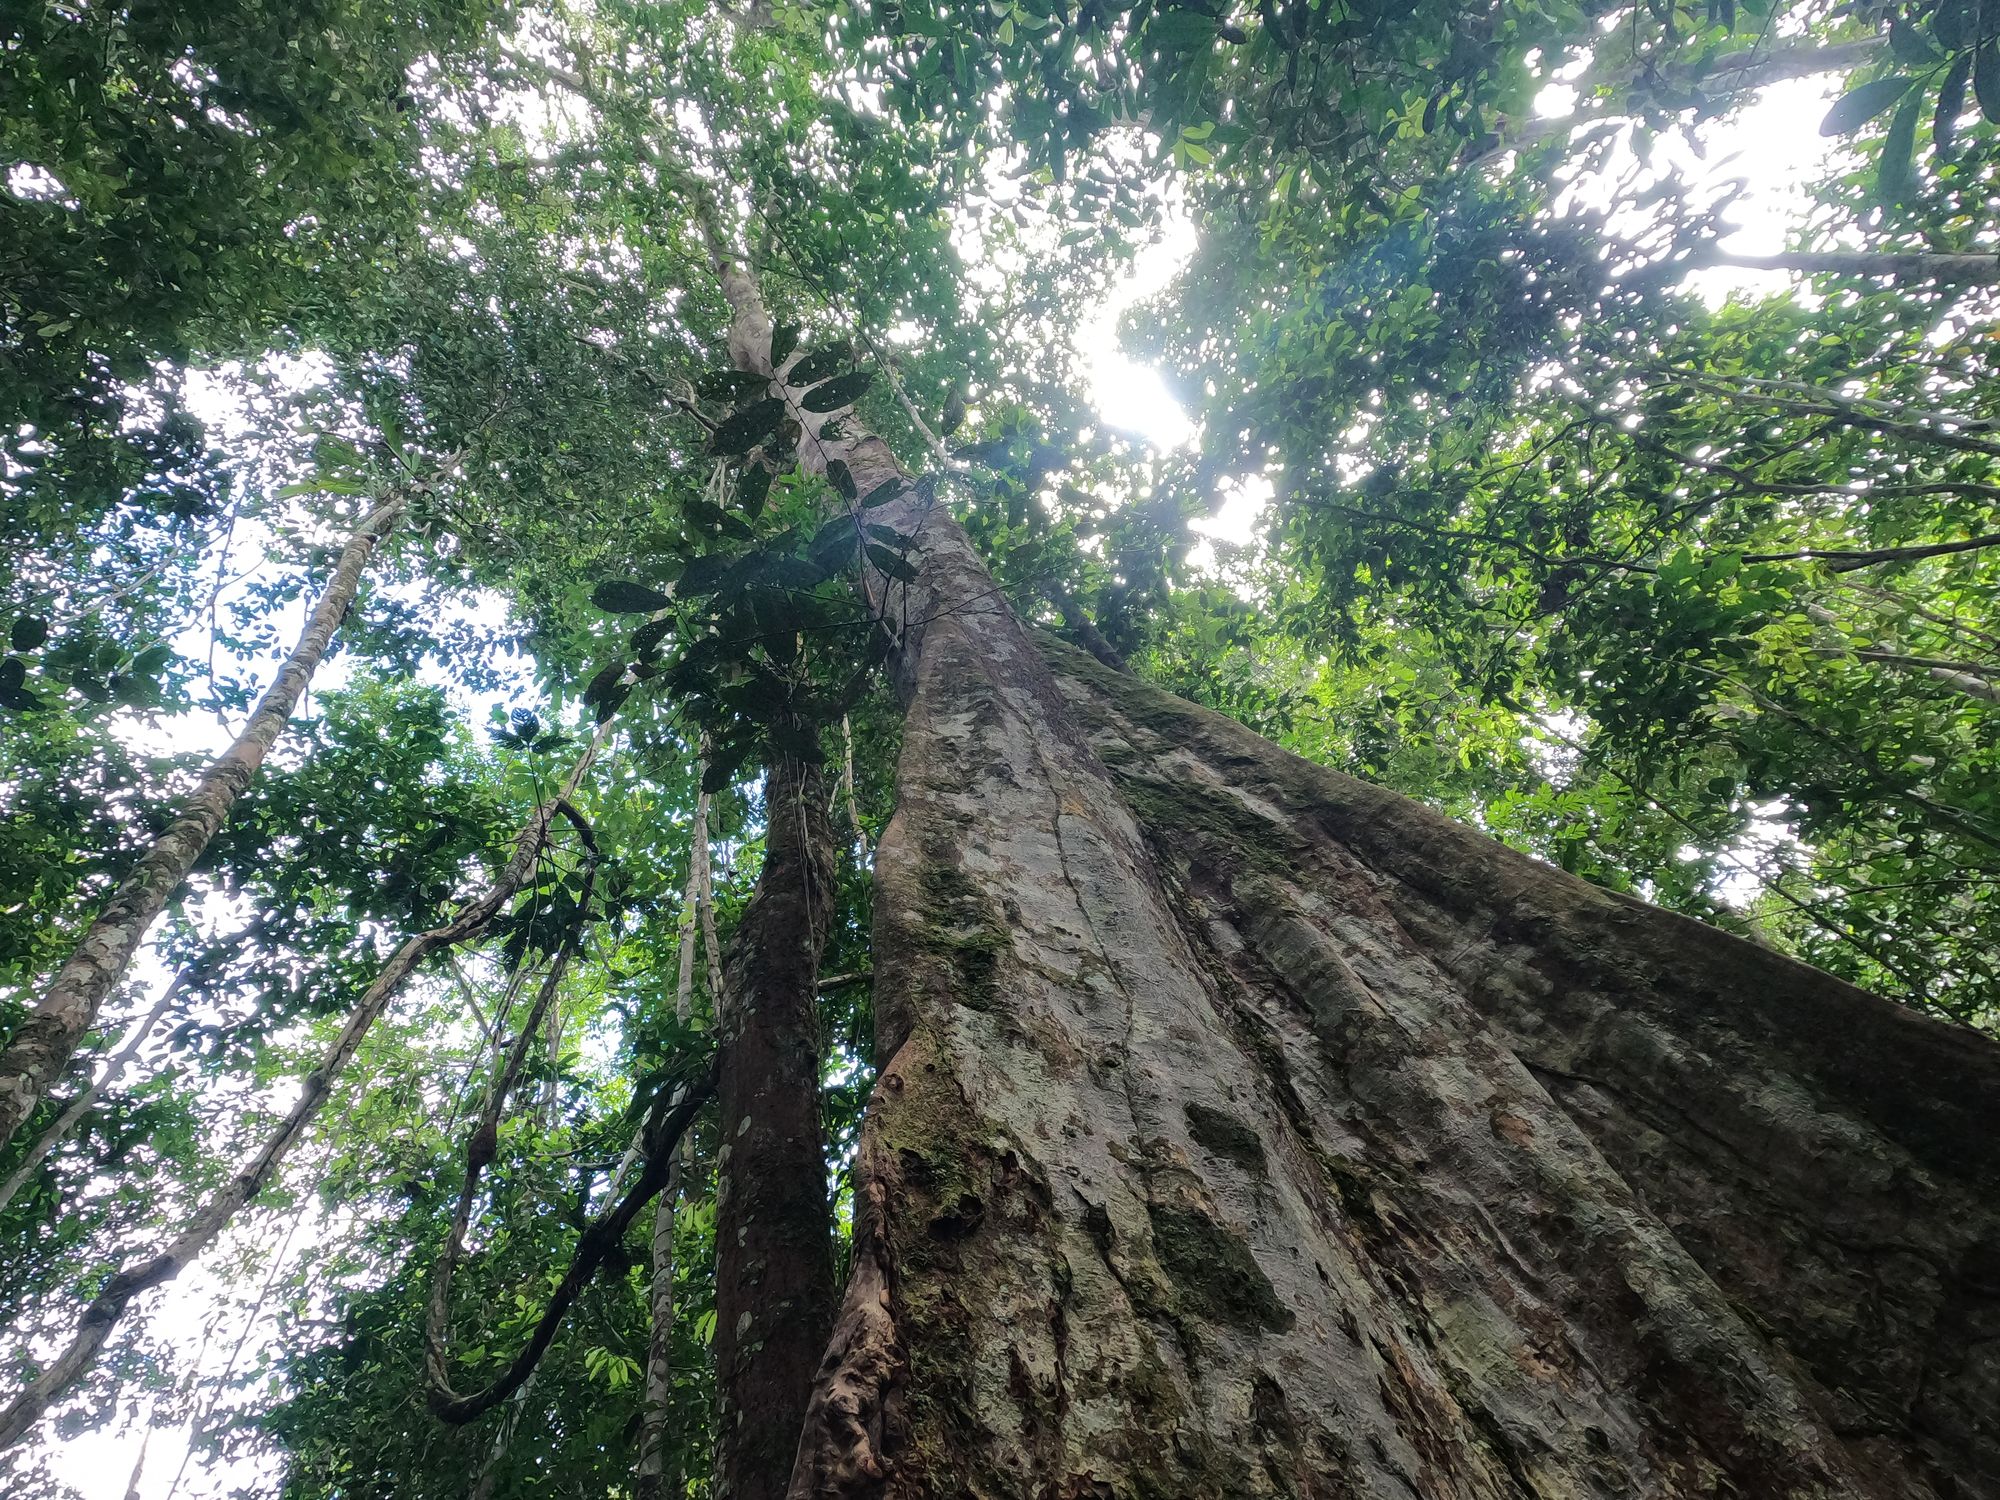 Ecuador - Cuyabeno Amazon